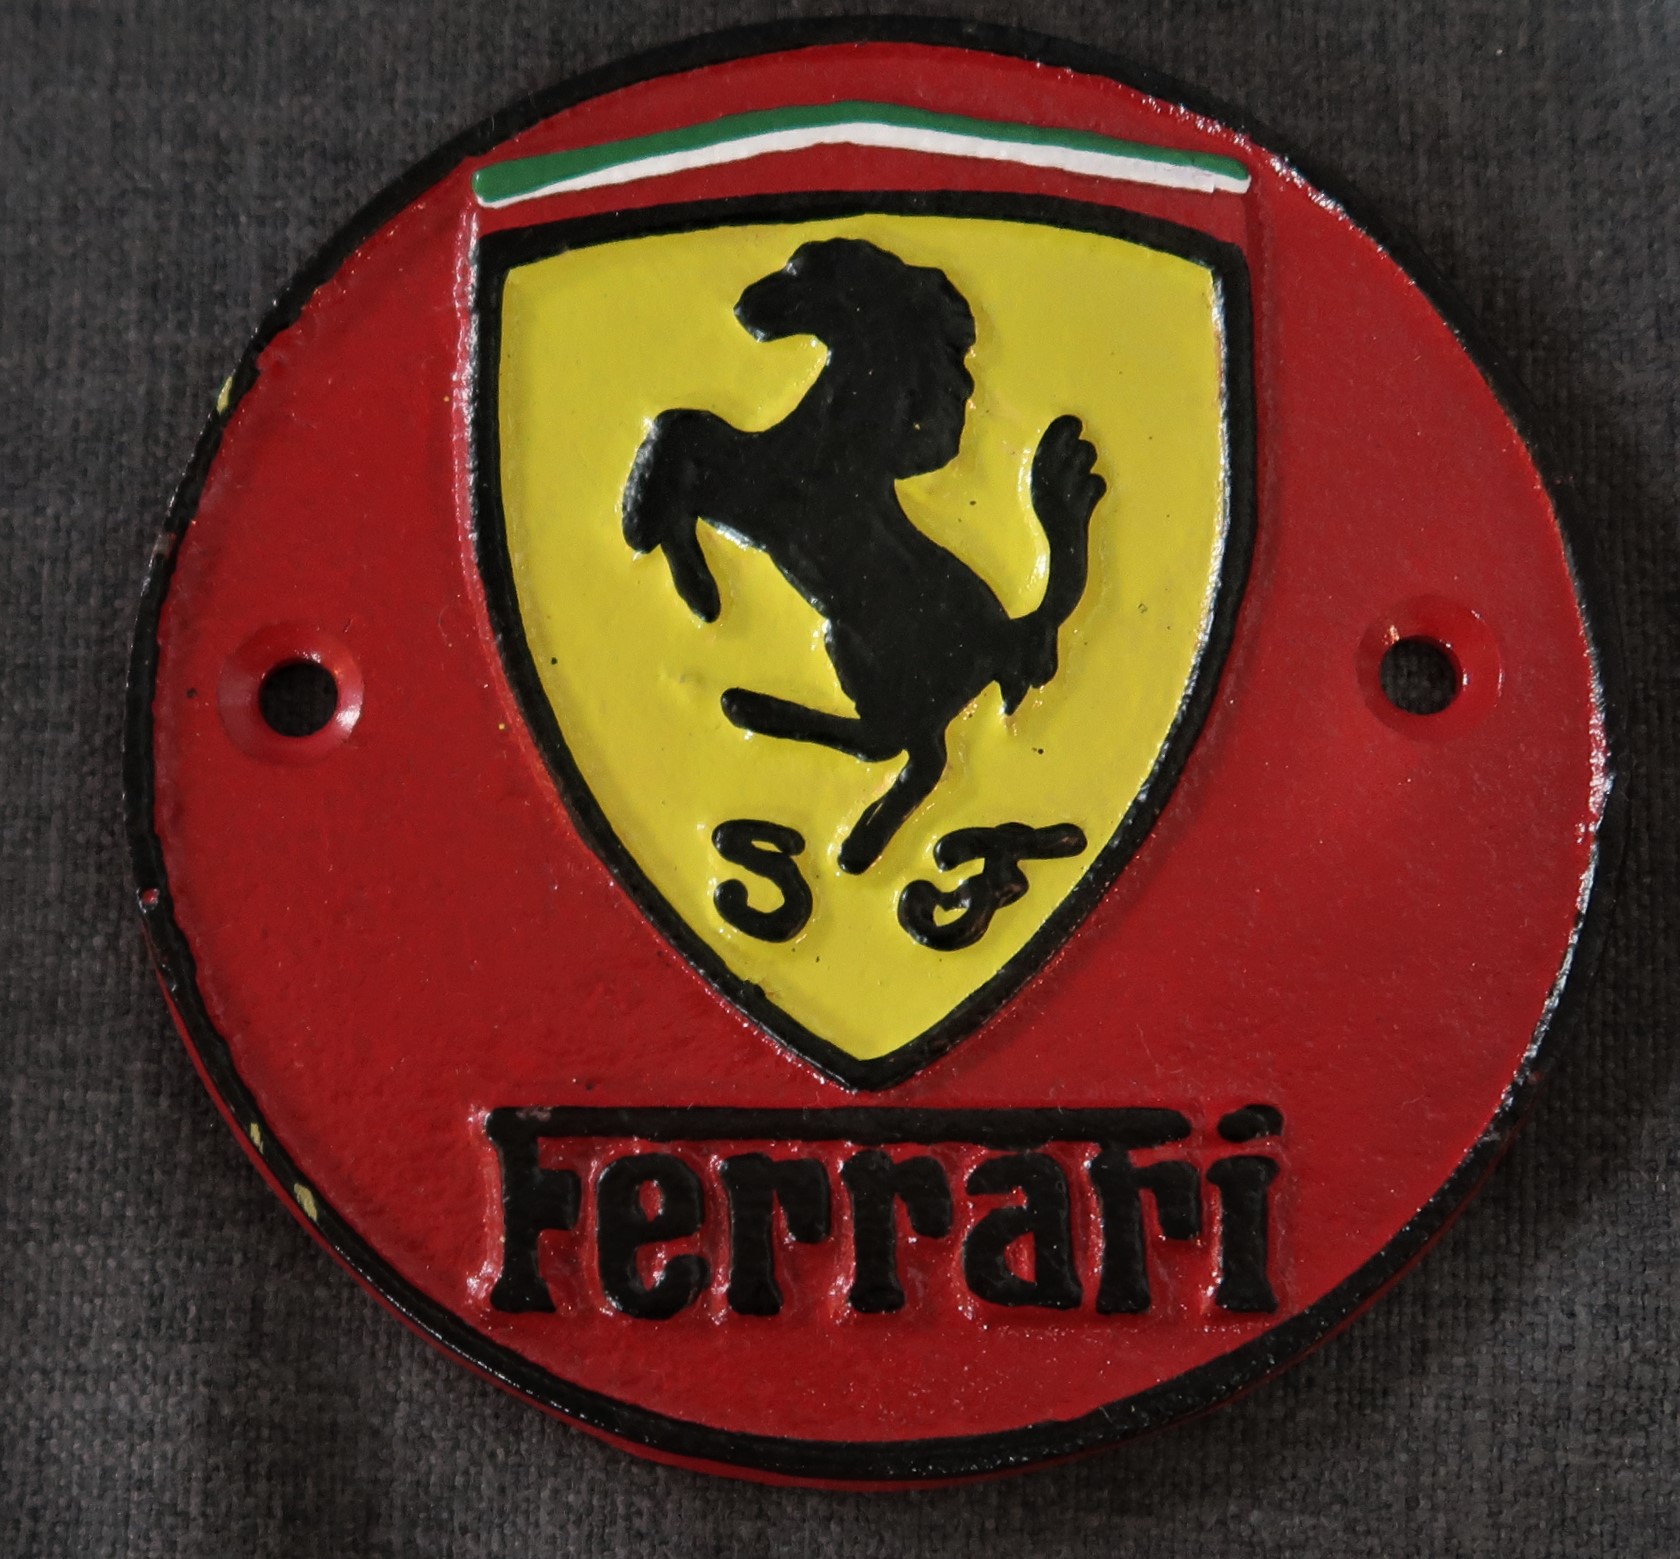 Cast iron mini plaque with Ferrari.